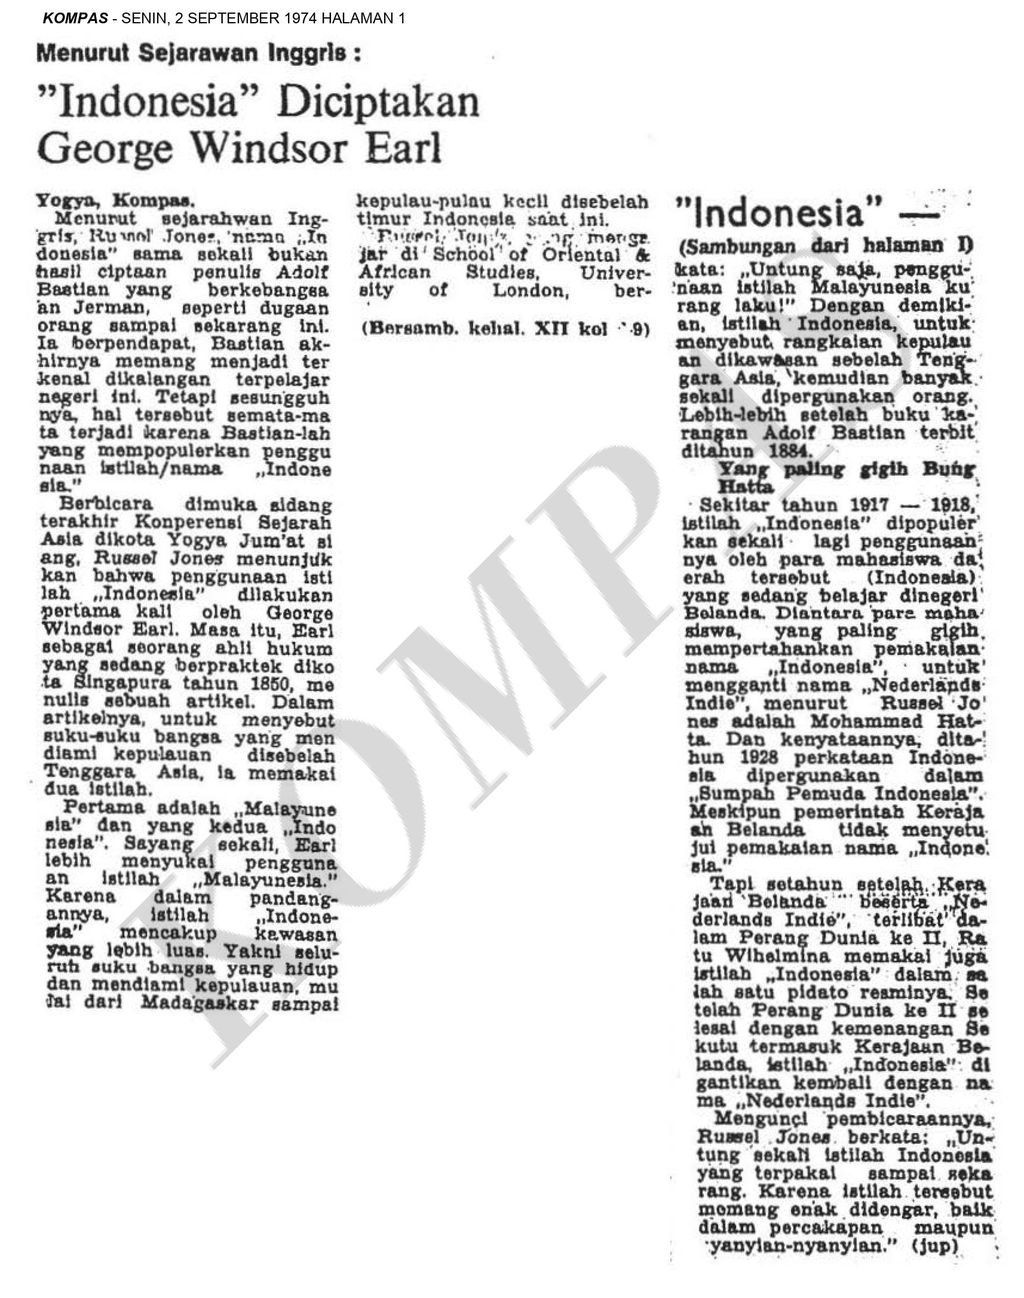 Pemberitaan di Kompas 2 September 1974 tentang asal-usul nama Indonesia yang diciptakan oleh George Windsor Earl.